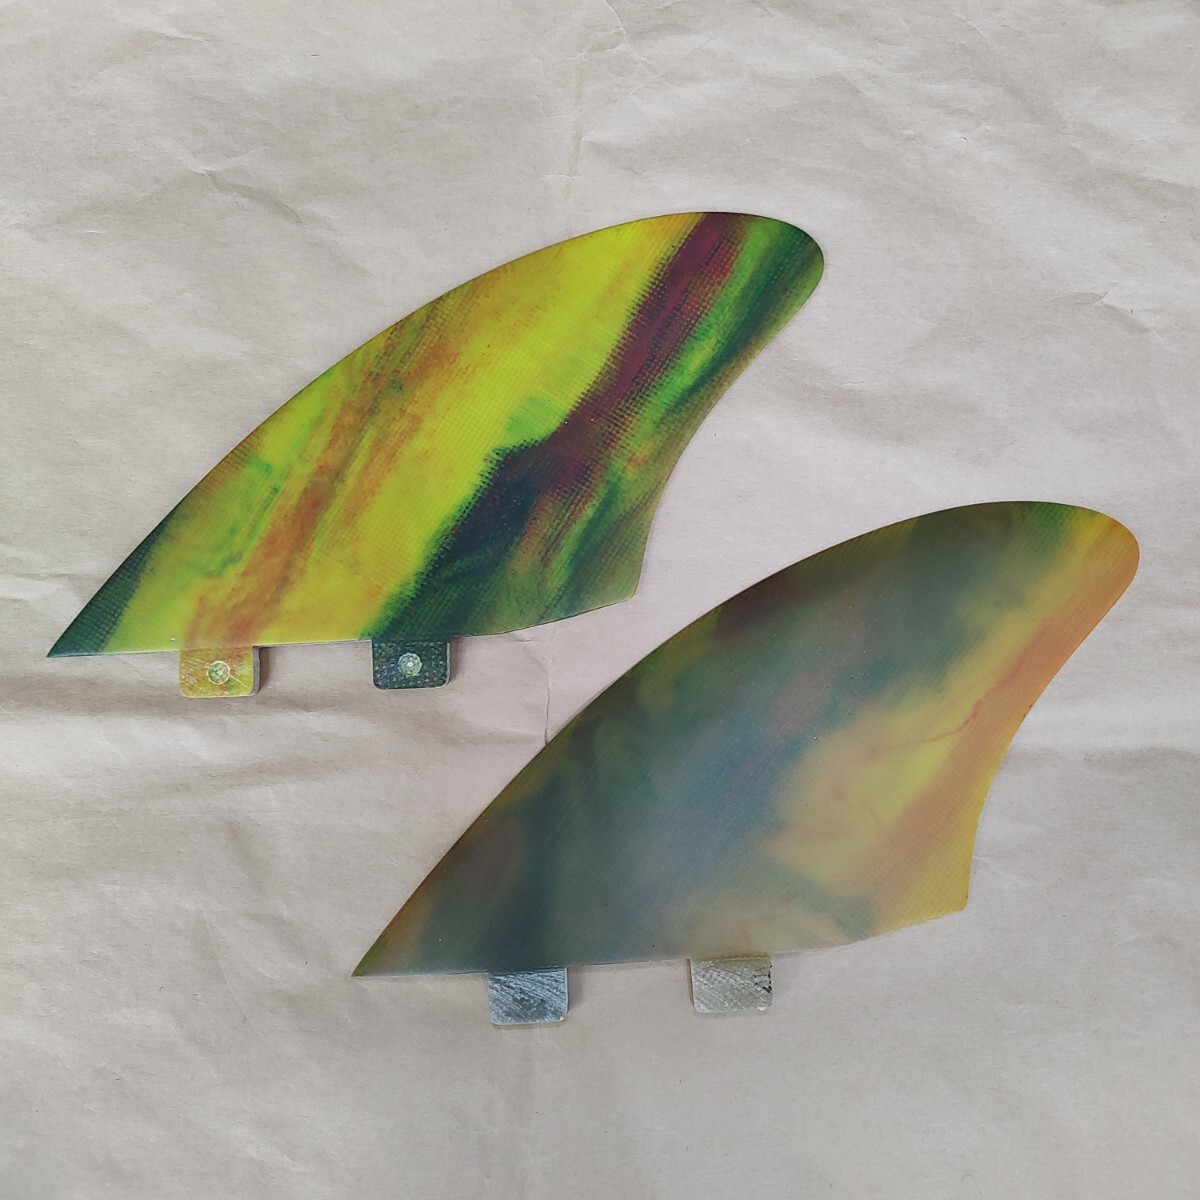 ツインキールフィン FCS対応 ツインフィン ノーブランドファイバーグラス製 アートグラス ショートボード ミッドレングス フィンの画像1